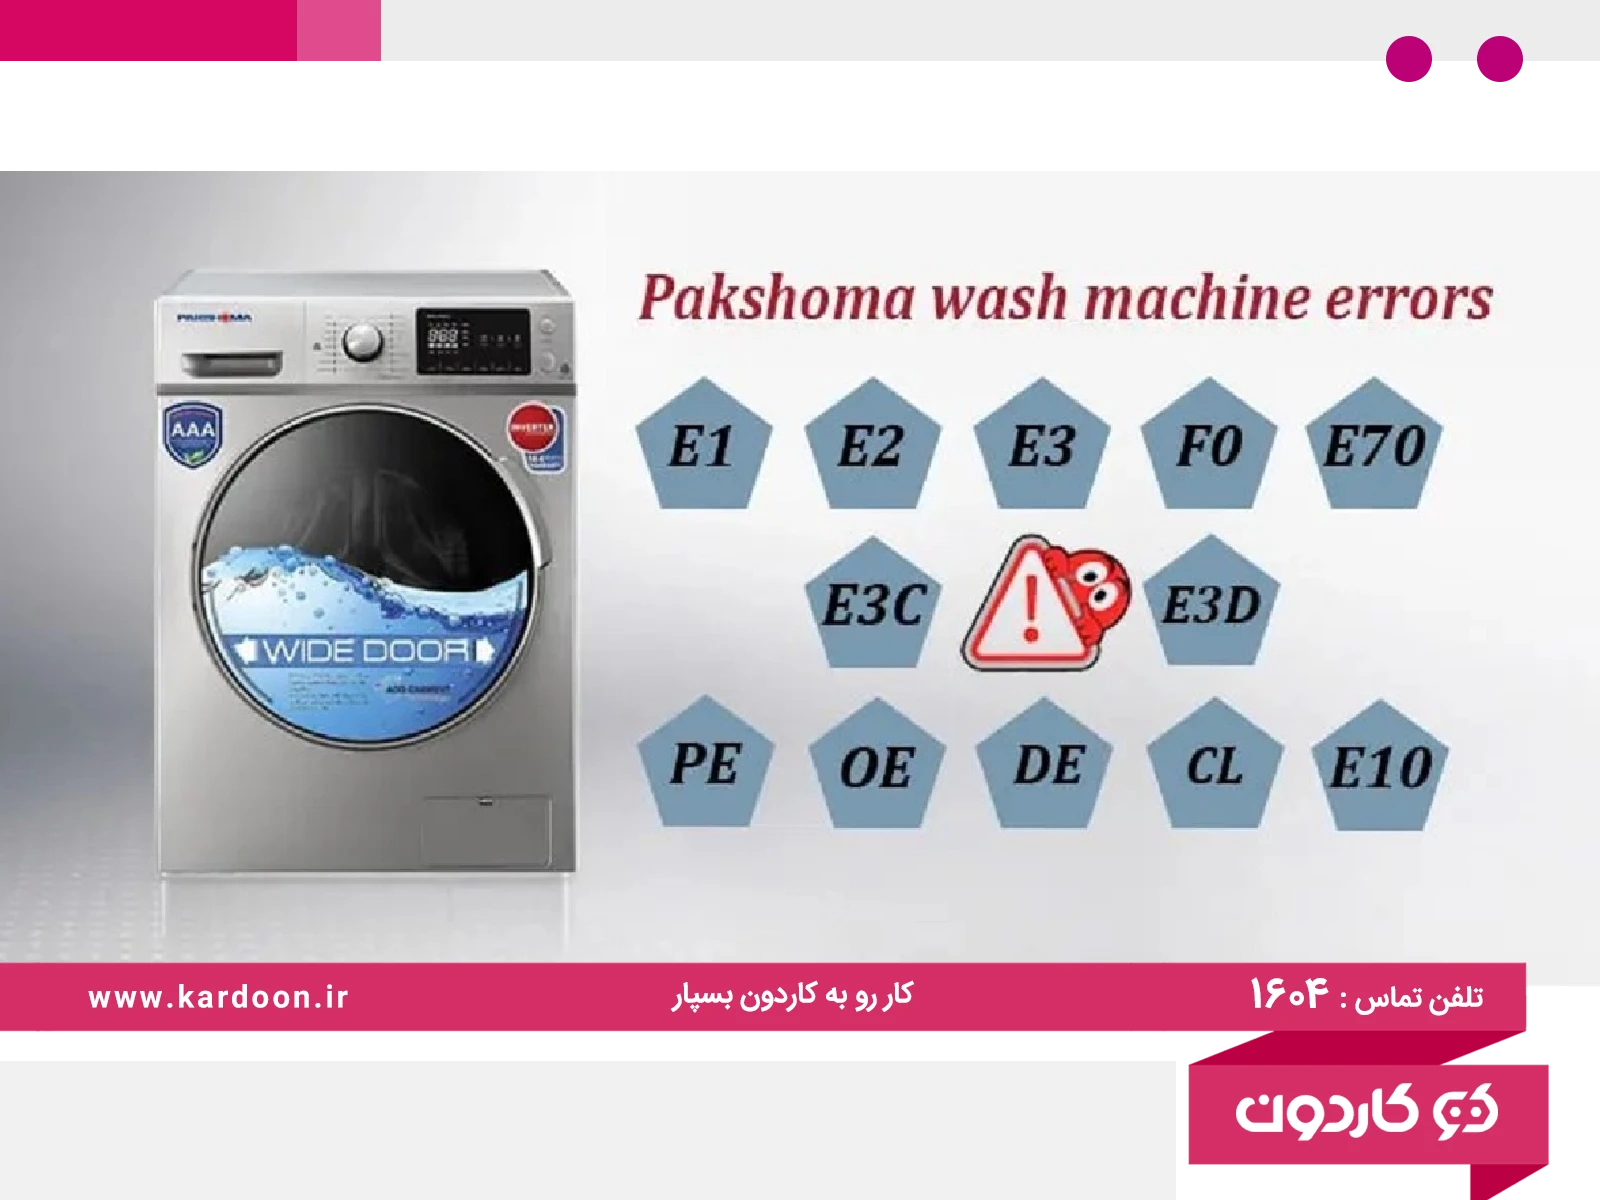 Pakshoma washing machine errors